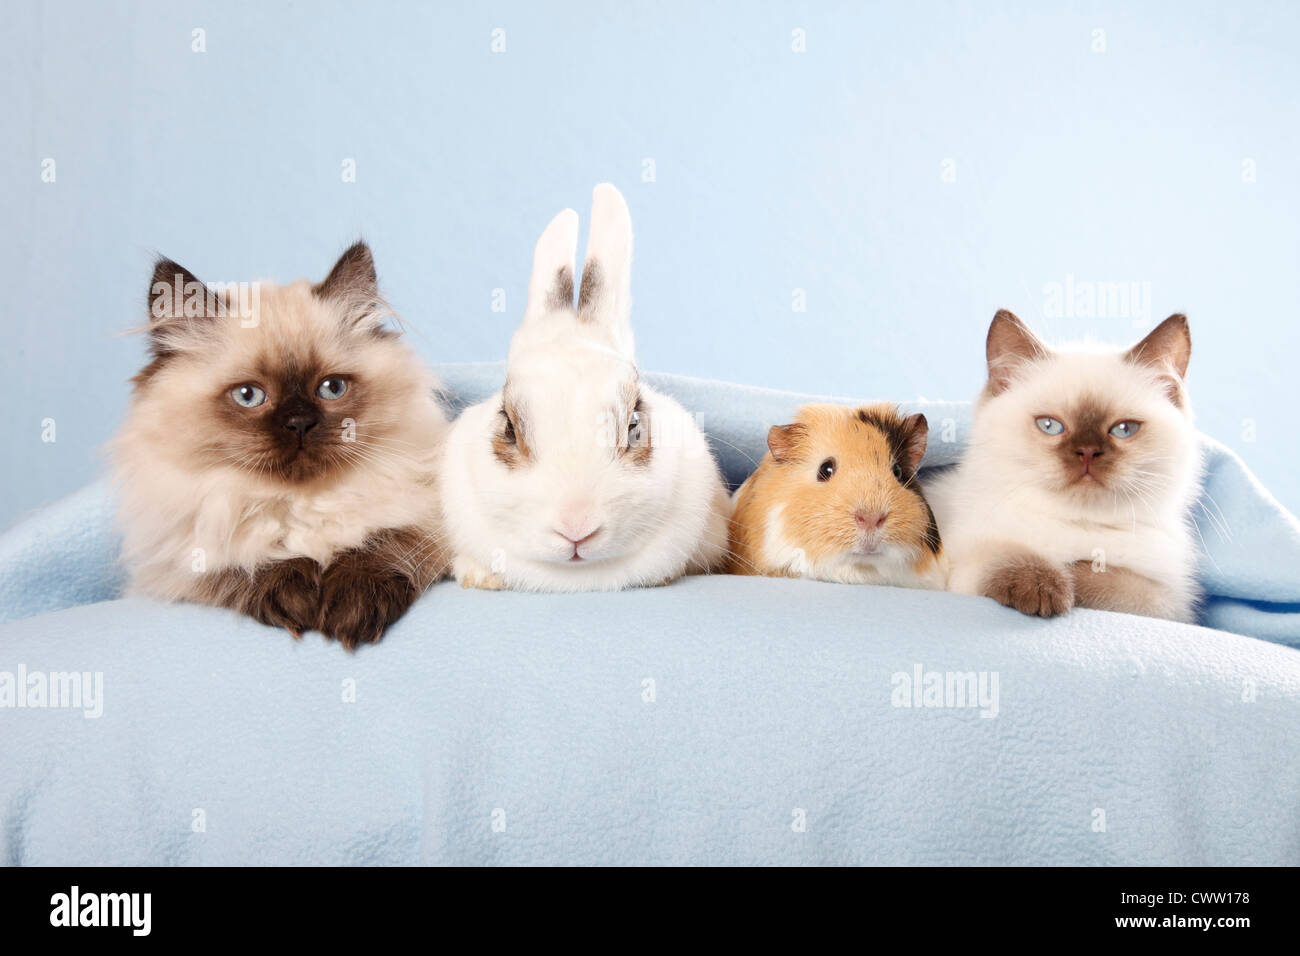 Katze & Kaninchen & Meerschweinchen / Katze, Hase und Guinea pig  Stockfotografie - Alamy